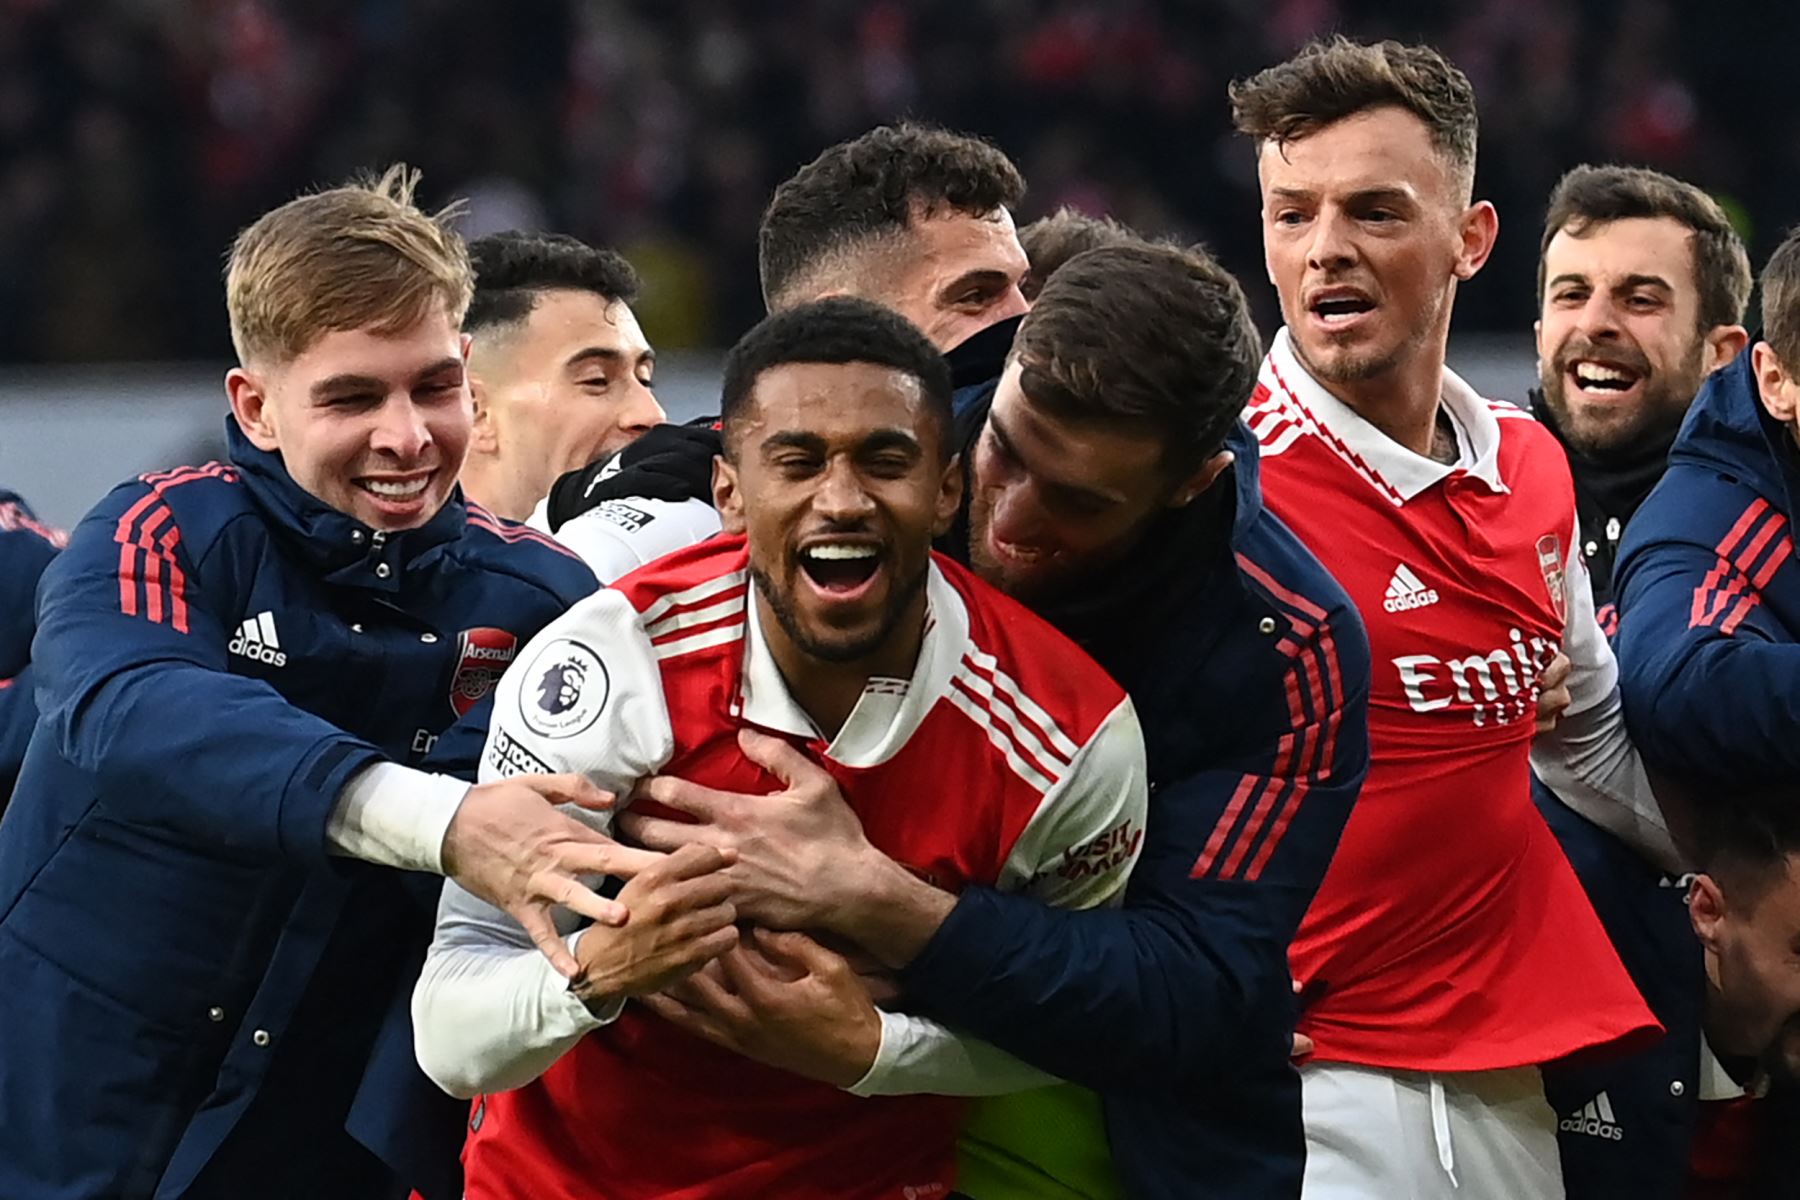 El mediocampista inglés del Arsenal, Reiss Nelson, celebra después de marcar el tercer gol de su equipo durante el partido de fútbol de la Premier League inglesa entre el Arsenal y el Bournemouth en el Emirates Stadium de Londres el 4 de marzo de 2023. Foto: AFP